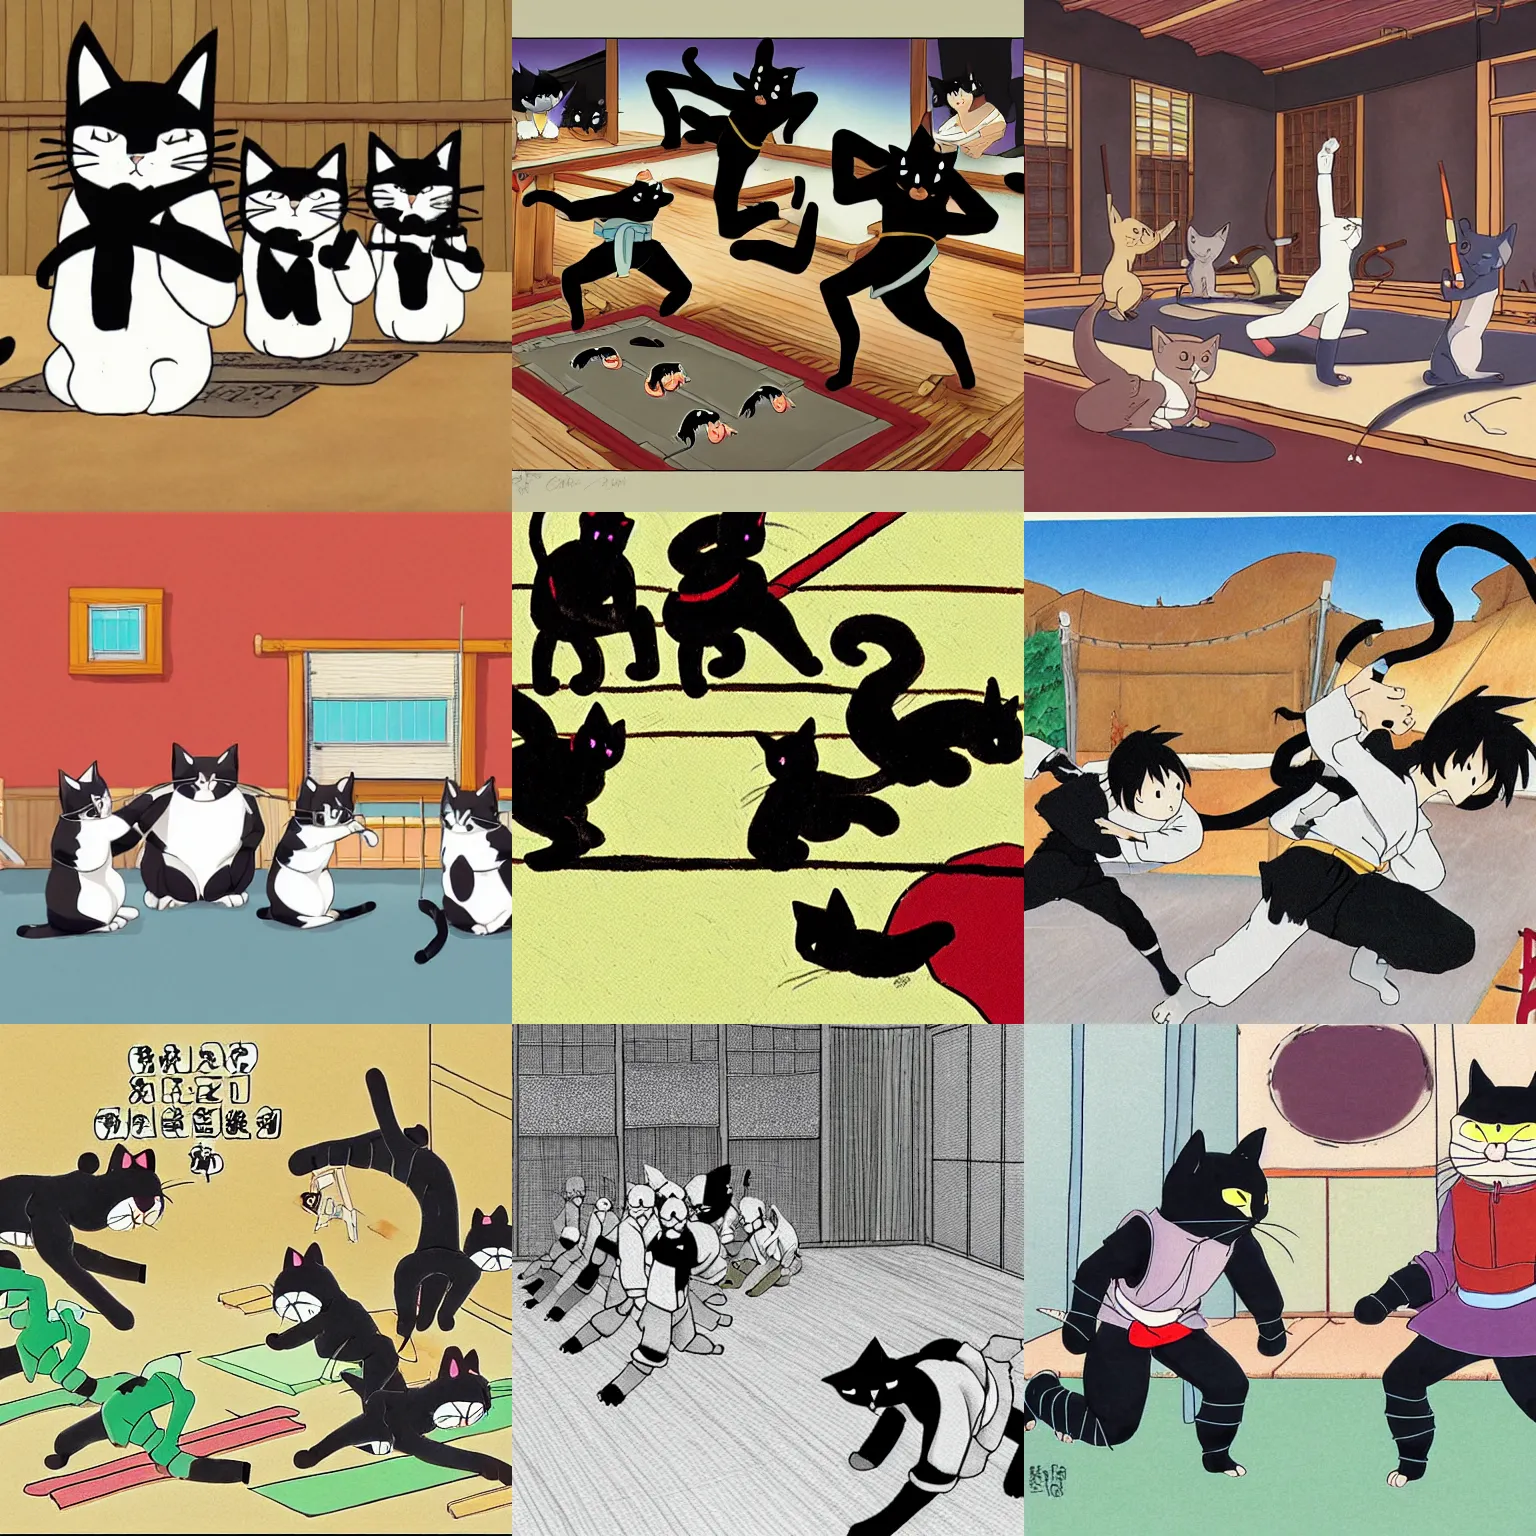 Prompt: cat ninjas training in a dojo by Studio Ghibli